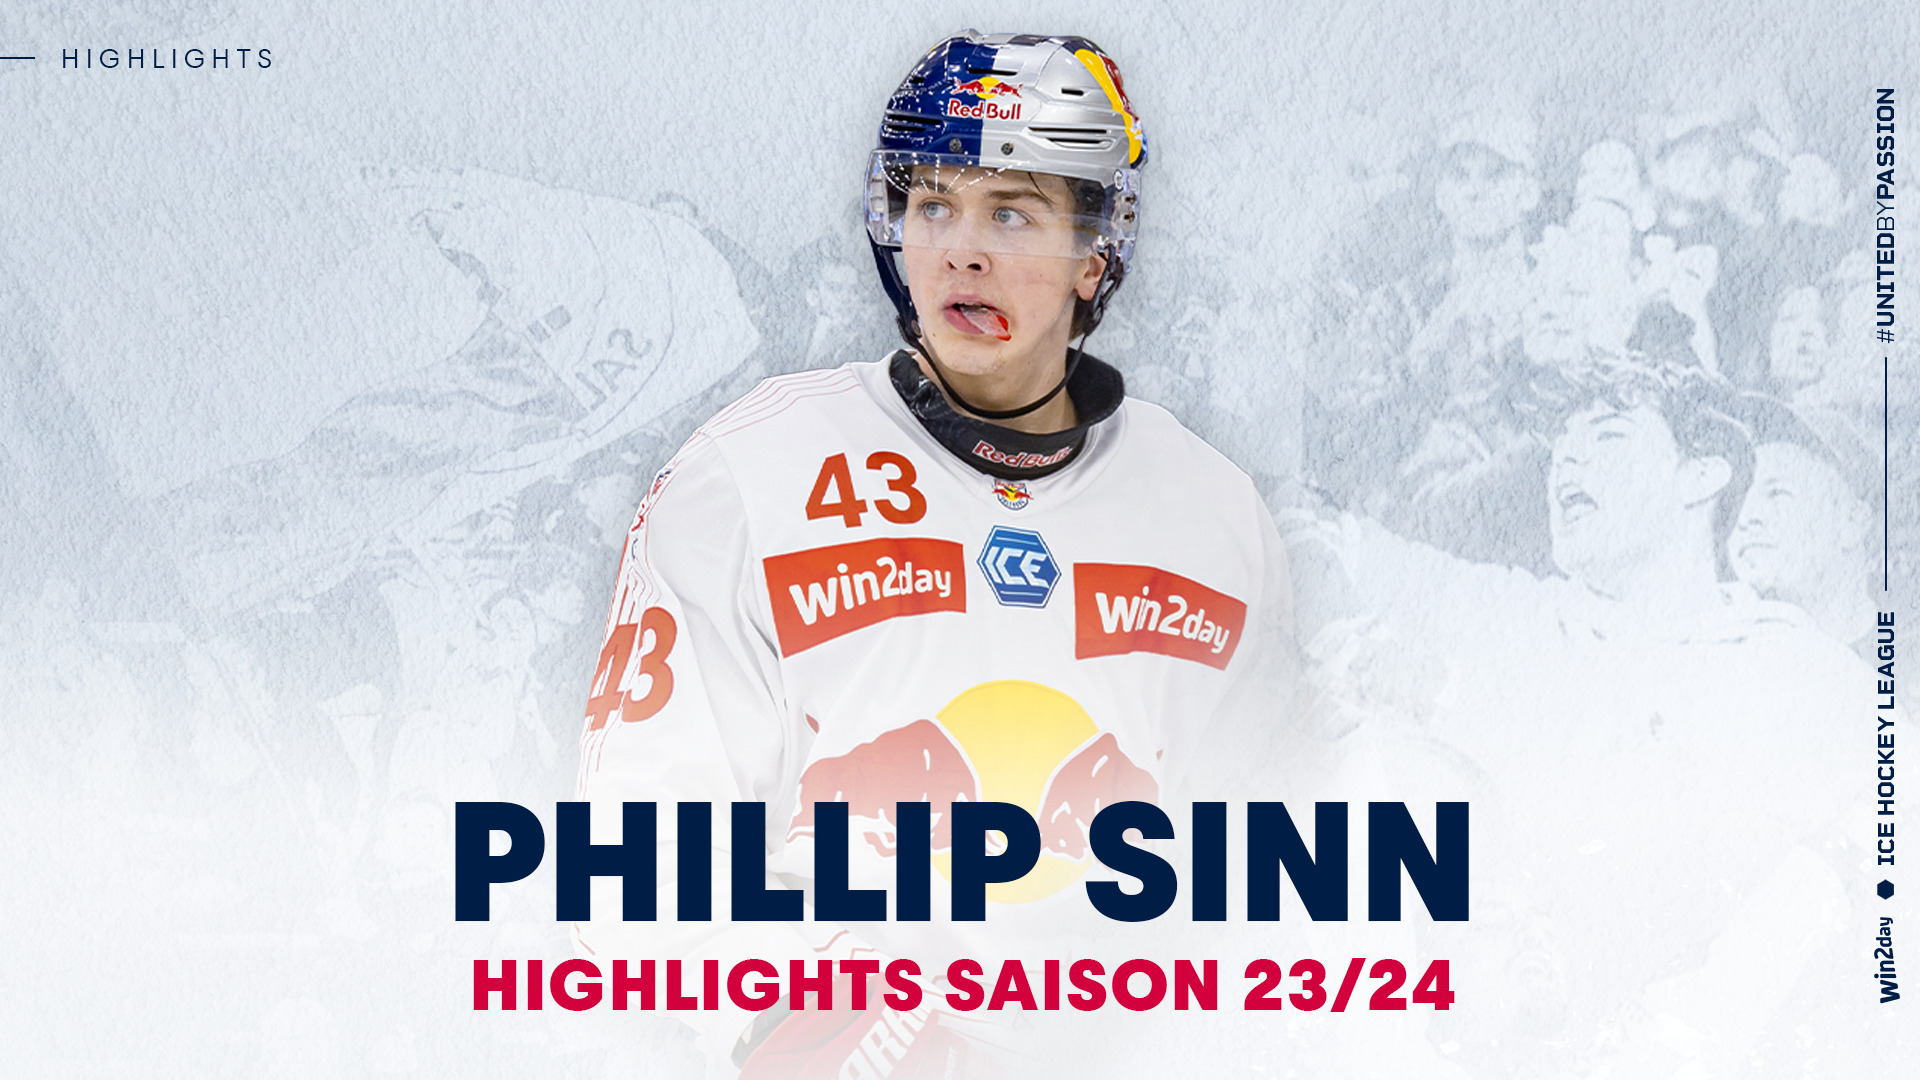 Phillip Sinn: Die Highlights aus der Saison 23/24